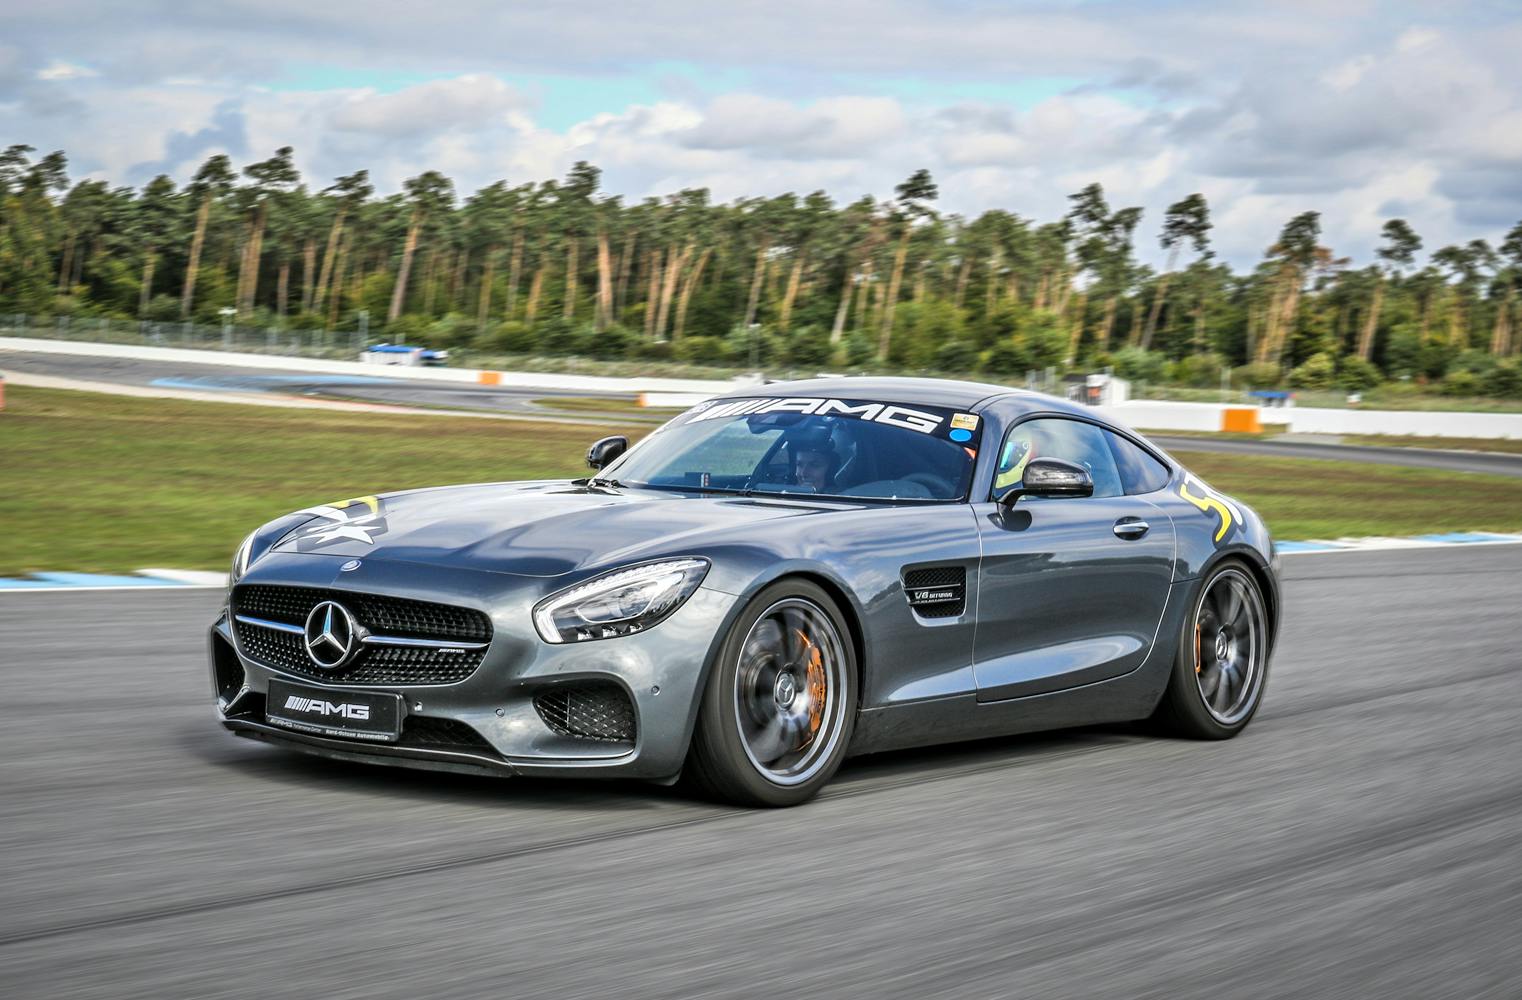 Mercedes-AMG GTS auf der Rennstrecke | Action mit Highspeed